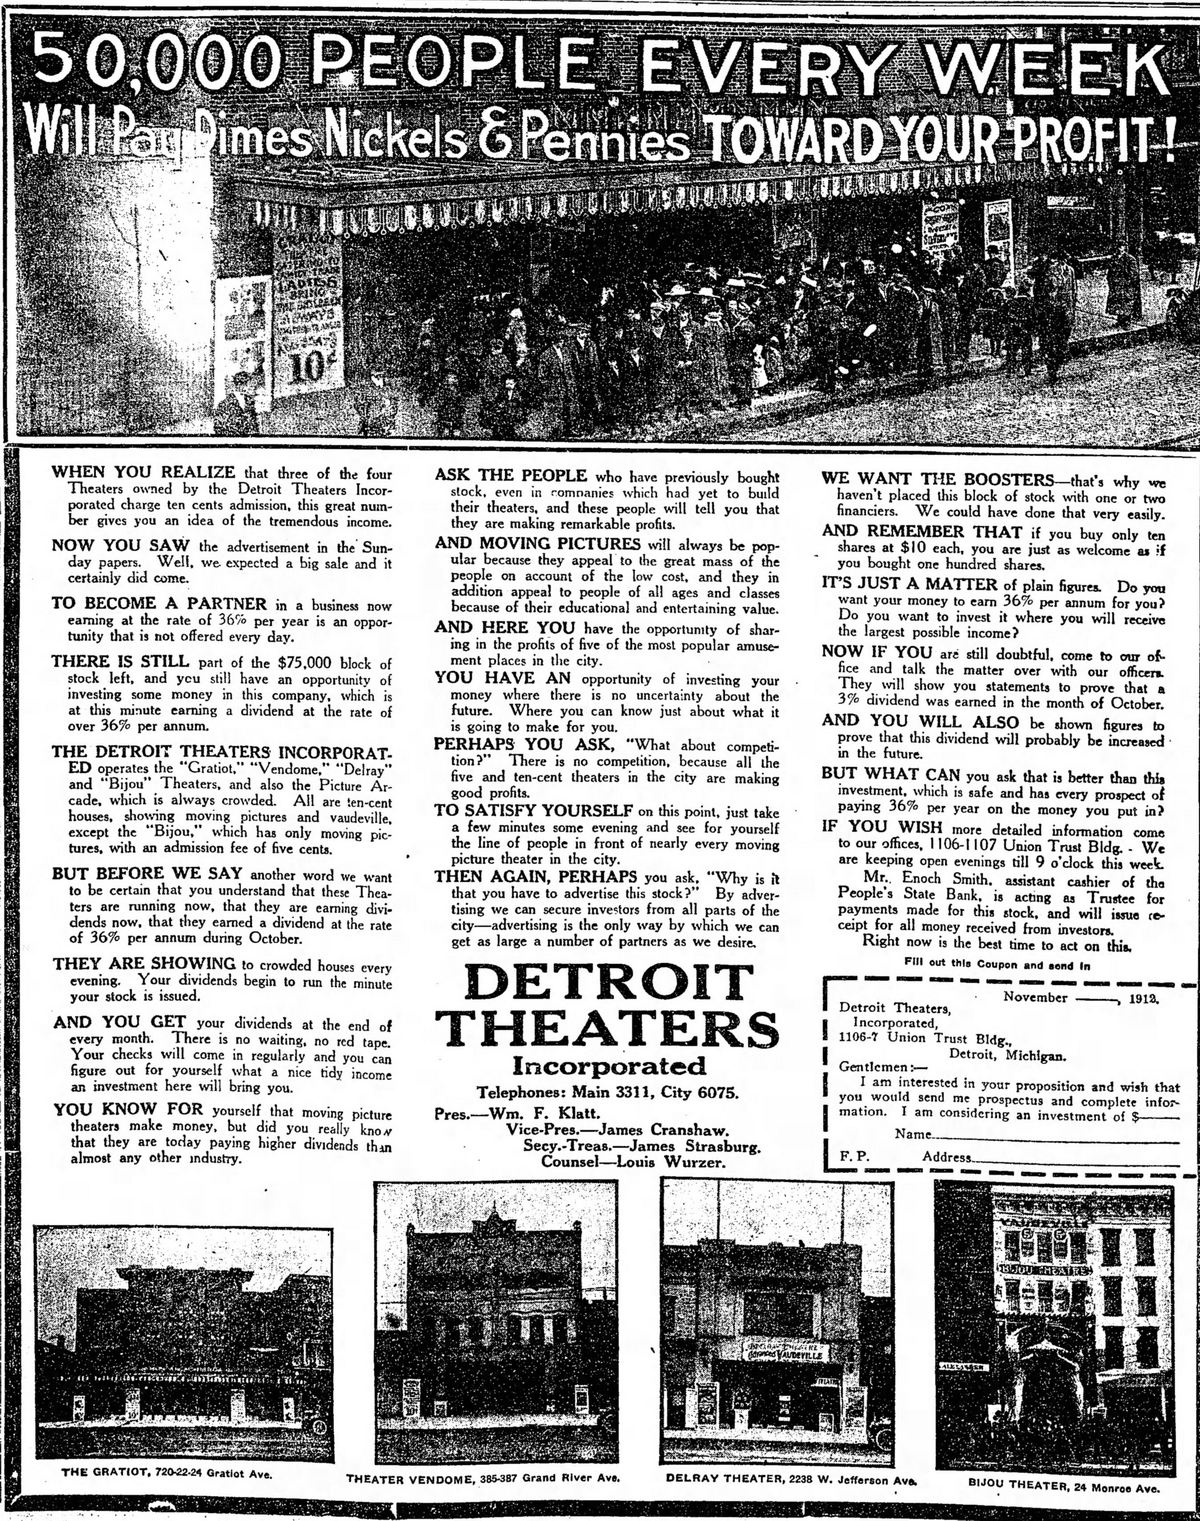 Delray Theatre - November 1912 Ad